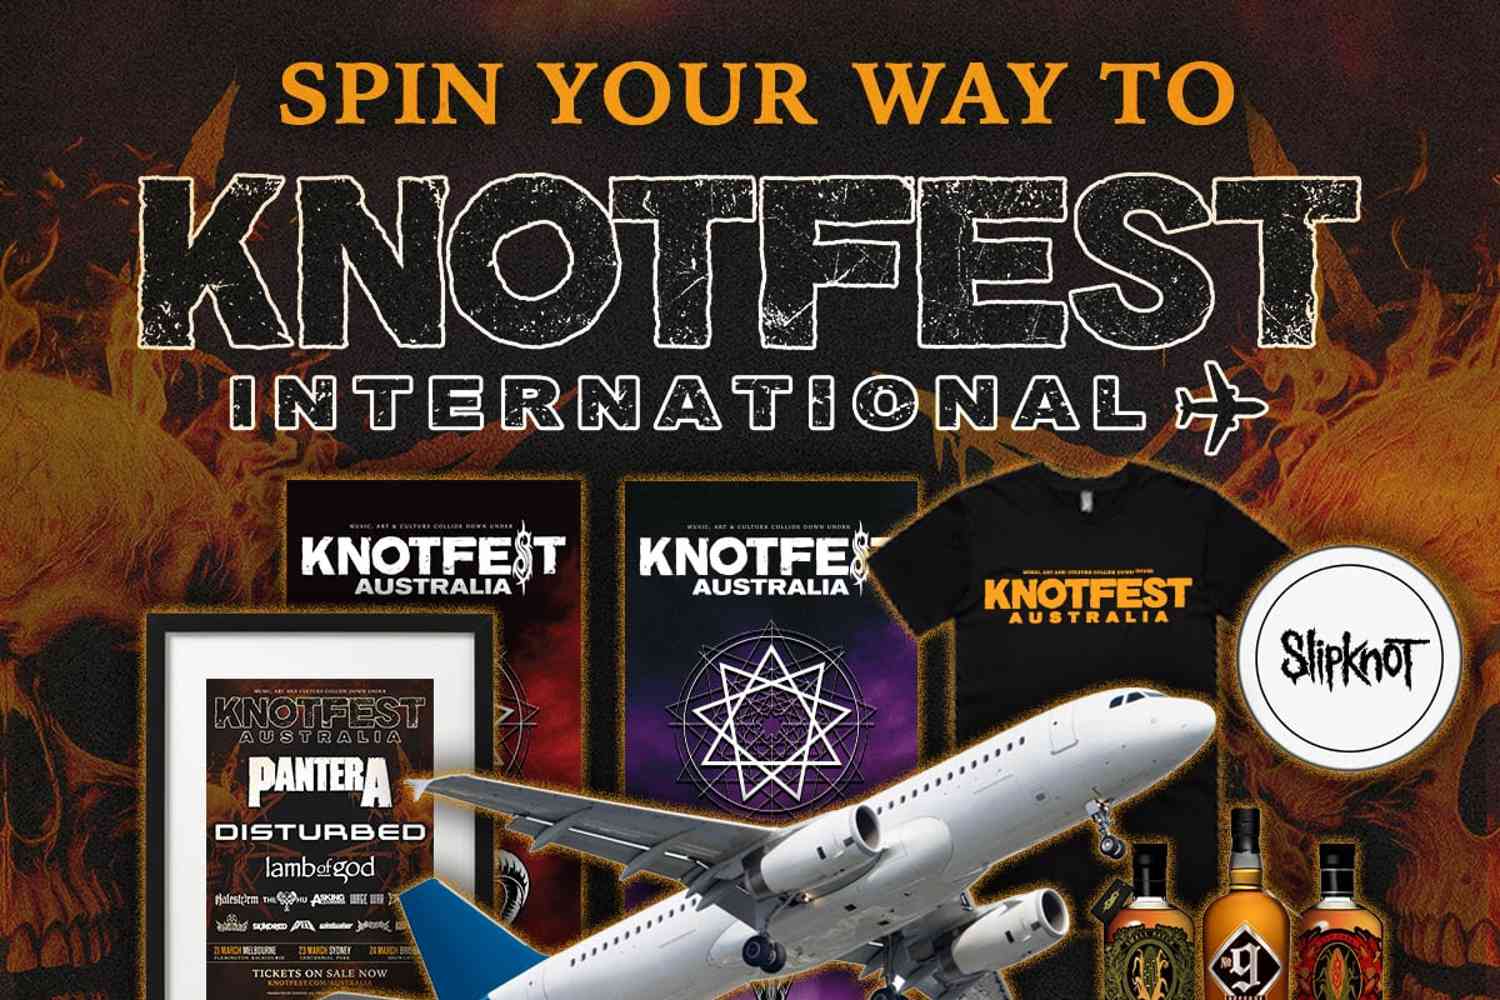 Knotfest Australia